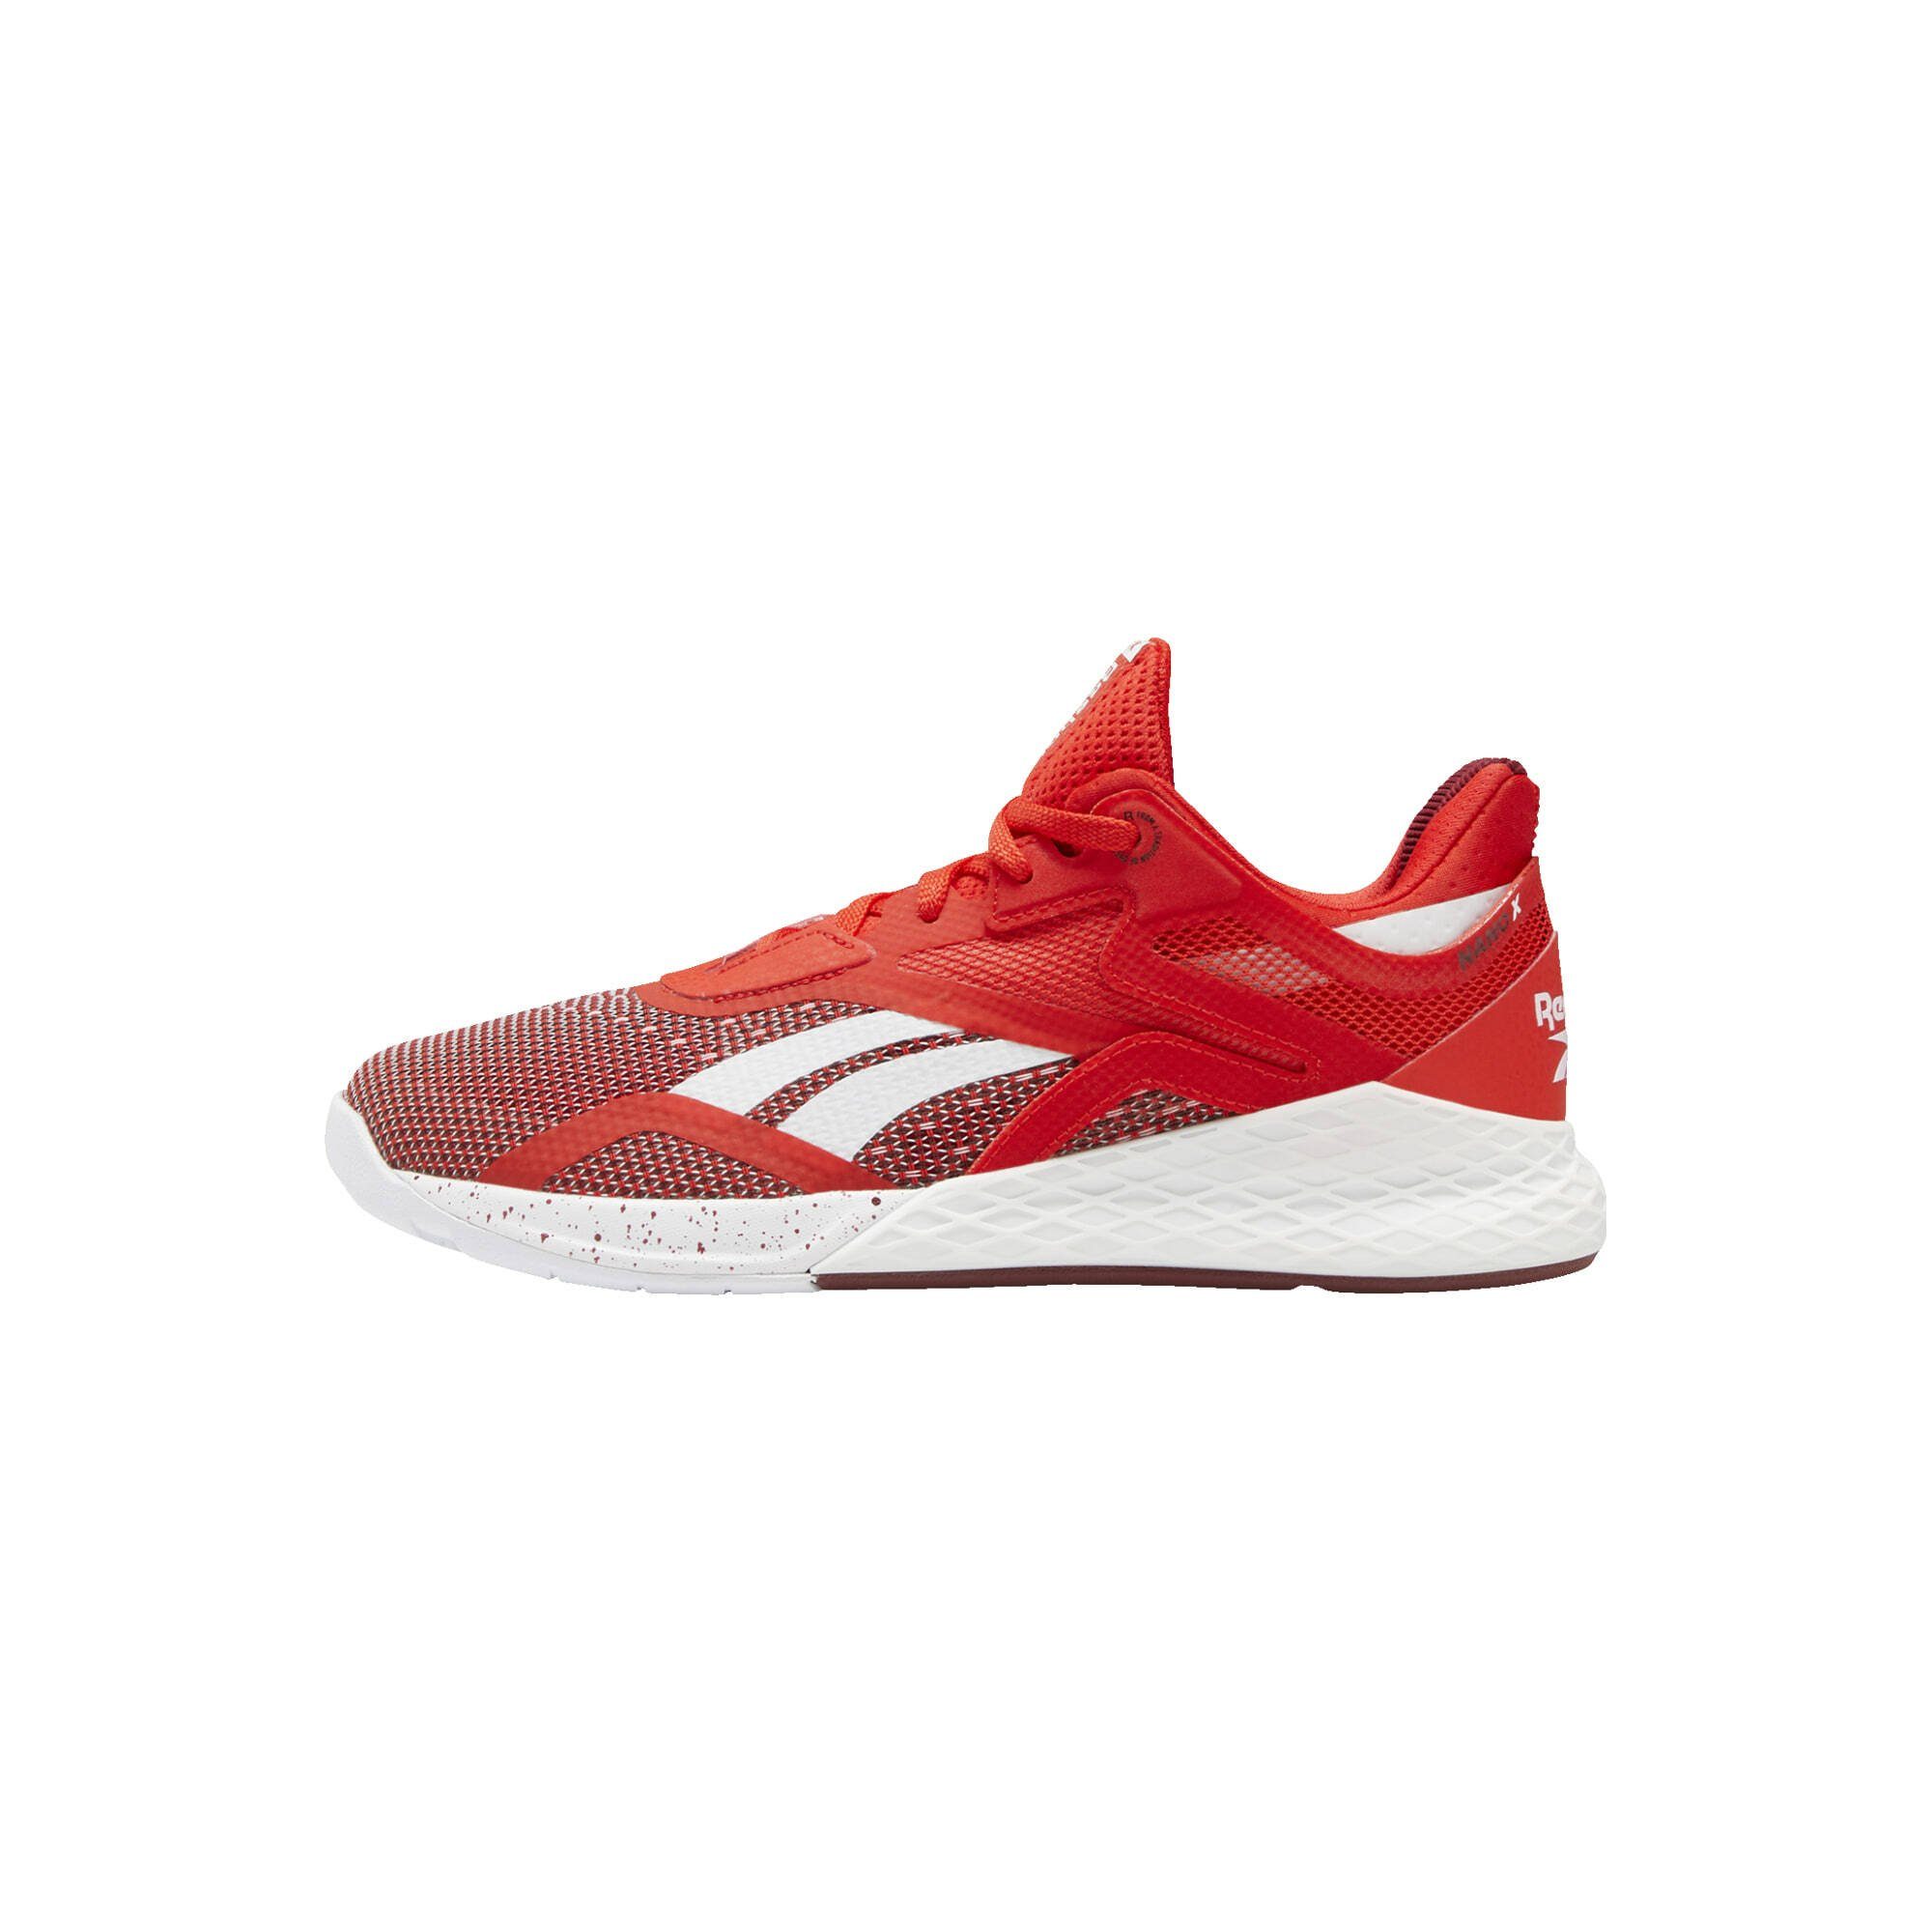 Rote Reebok Schuhe online kaufen | OTTO